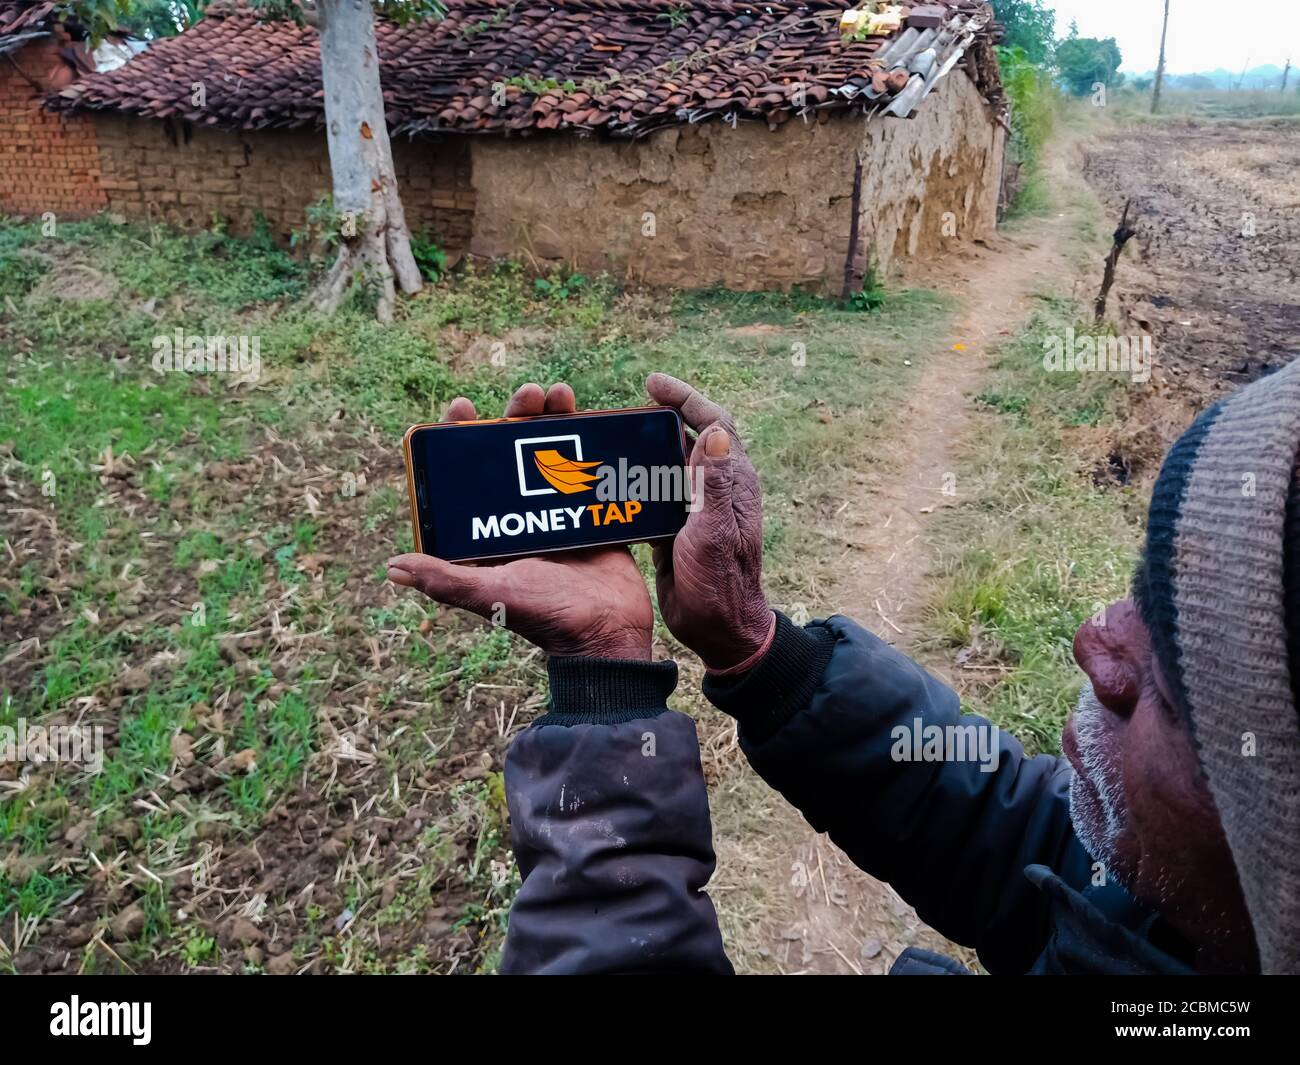 DISTRETTO KATNI, INDIA - 20 DICEMBRE 2019: Soldi Tap Instant Loan portale online presentato su smart phone schermo digitale da parte della mano di gente del villaggio indiano Foto Stock